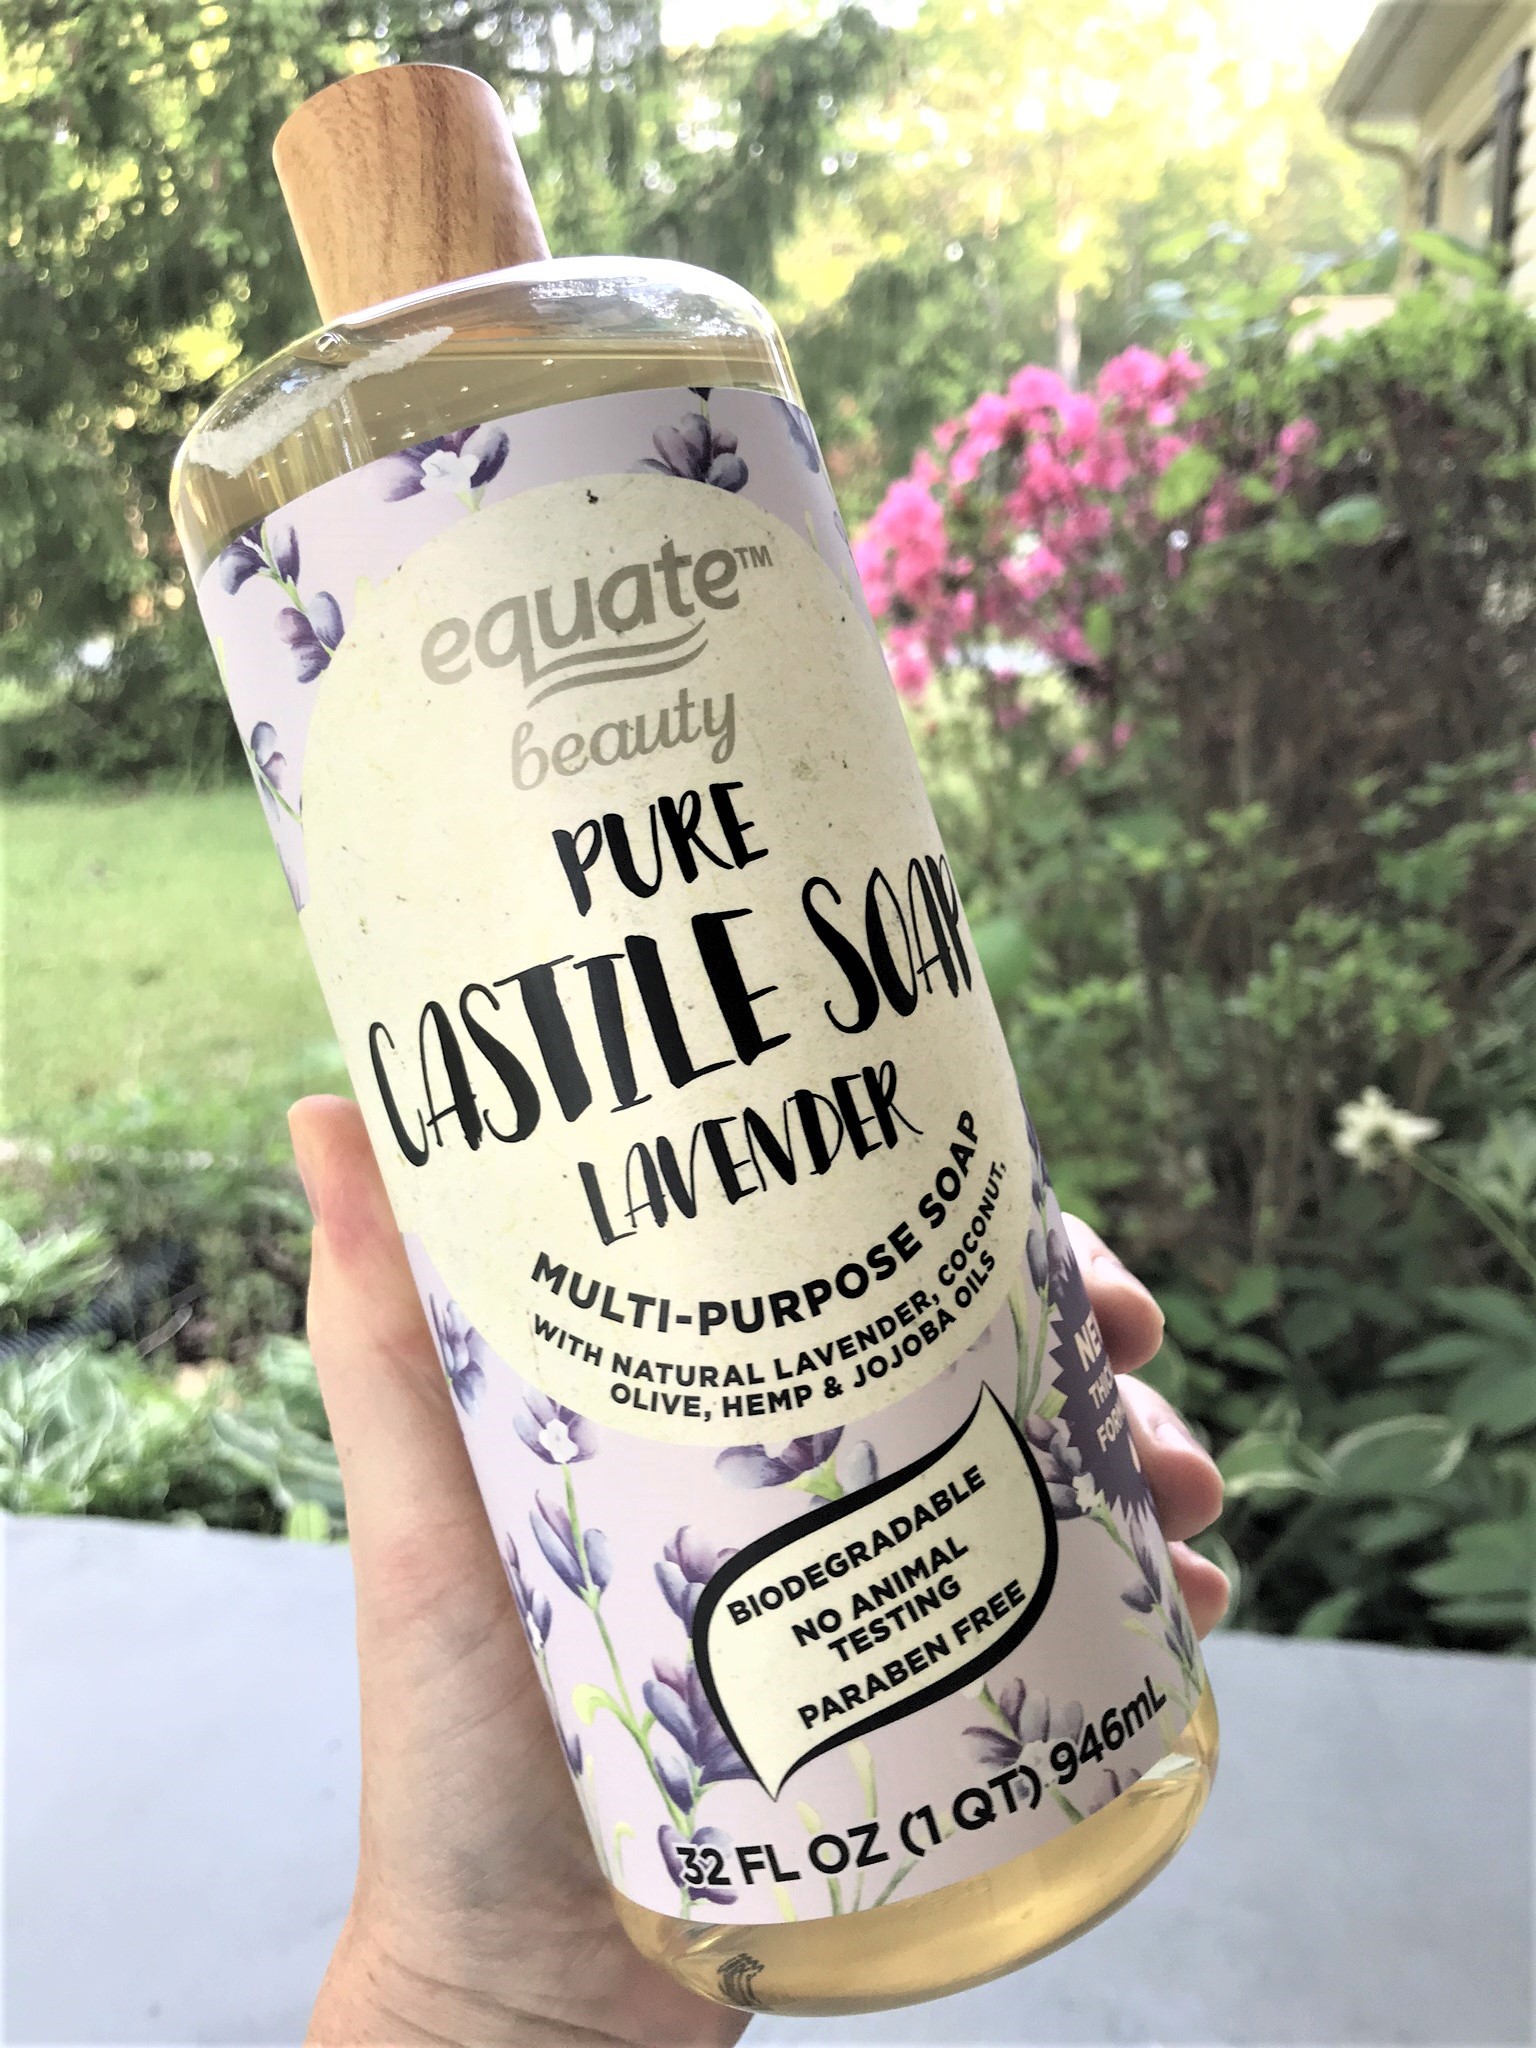 Bottle of Pure Castile Soap Lavender